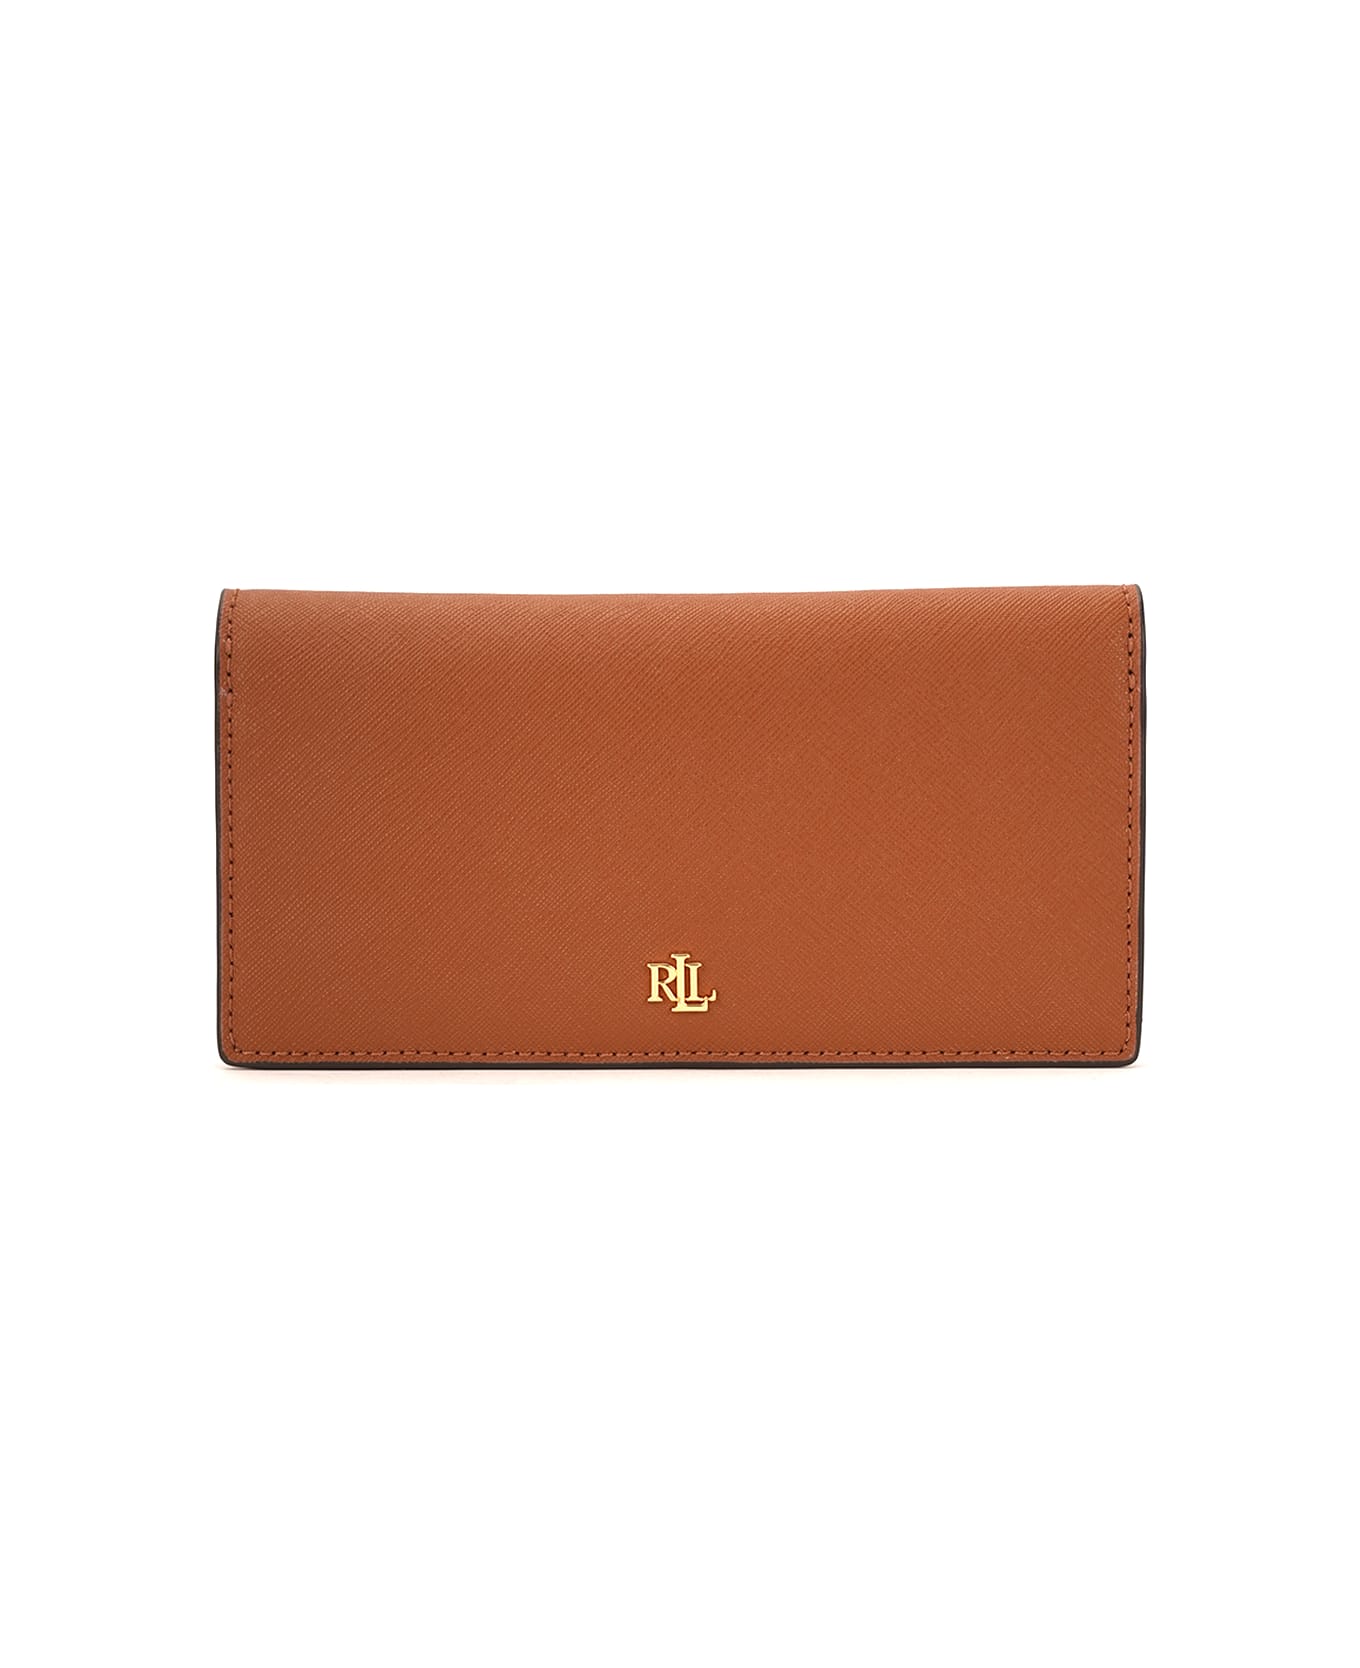 Polo Ralph Lauren Slim Wallet Wallet Medium - Brown